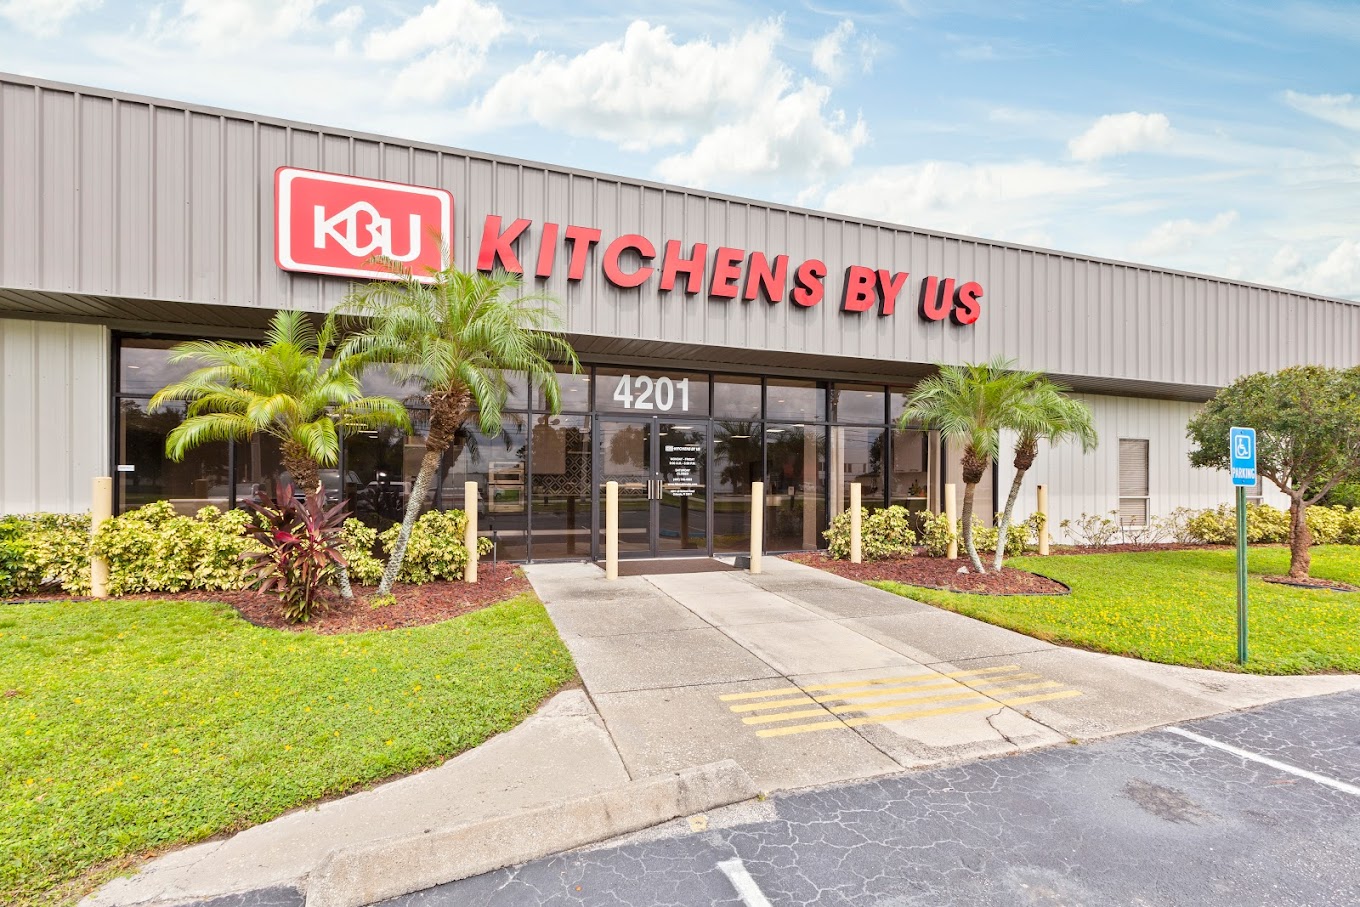 KBU Cabinetry-Kitchen By Us